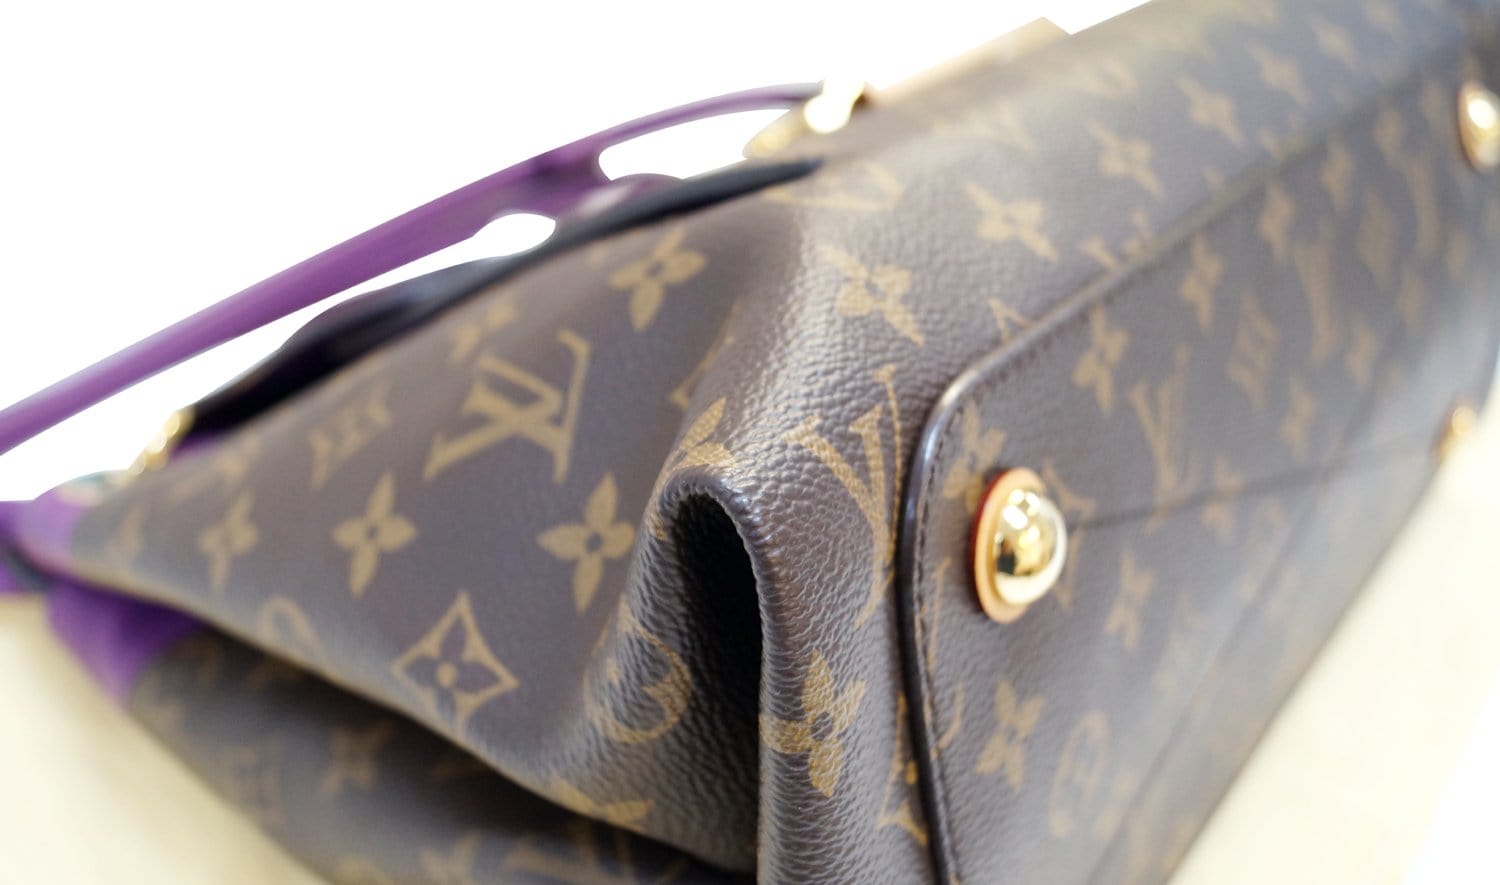 Louis Vuitton, Bags, Authentic Louis Vuitton Purple Patent Leather